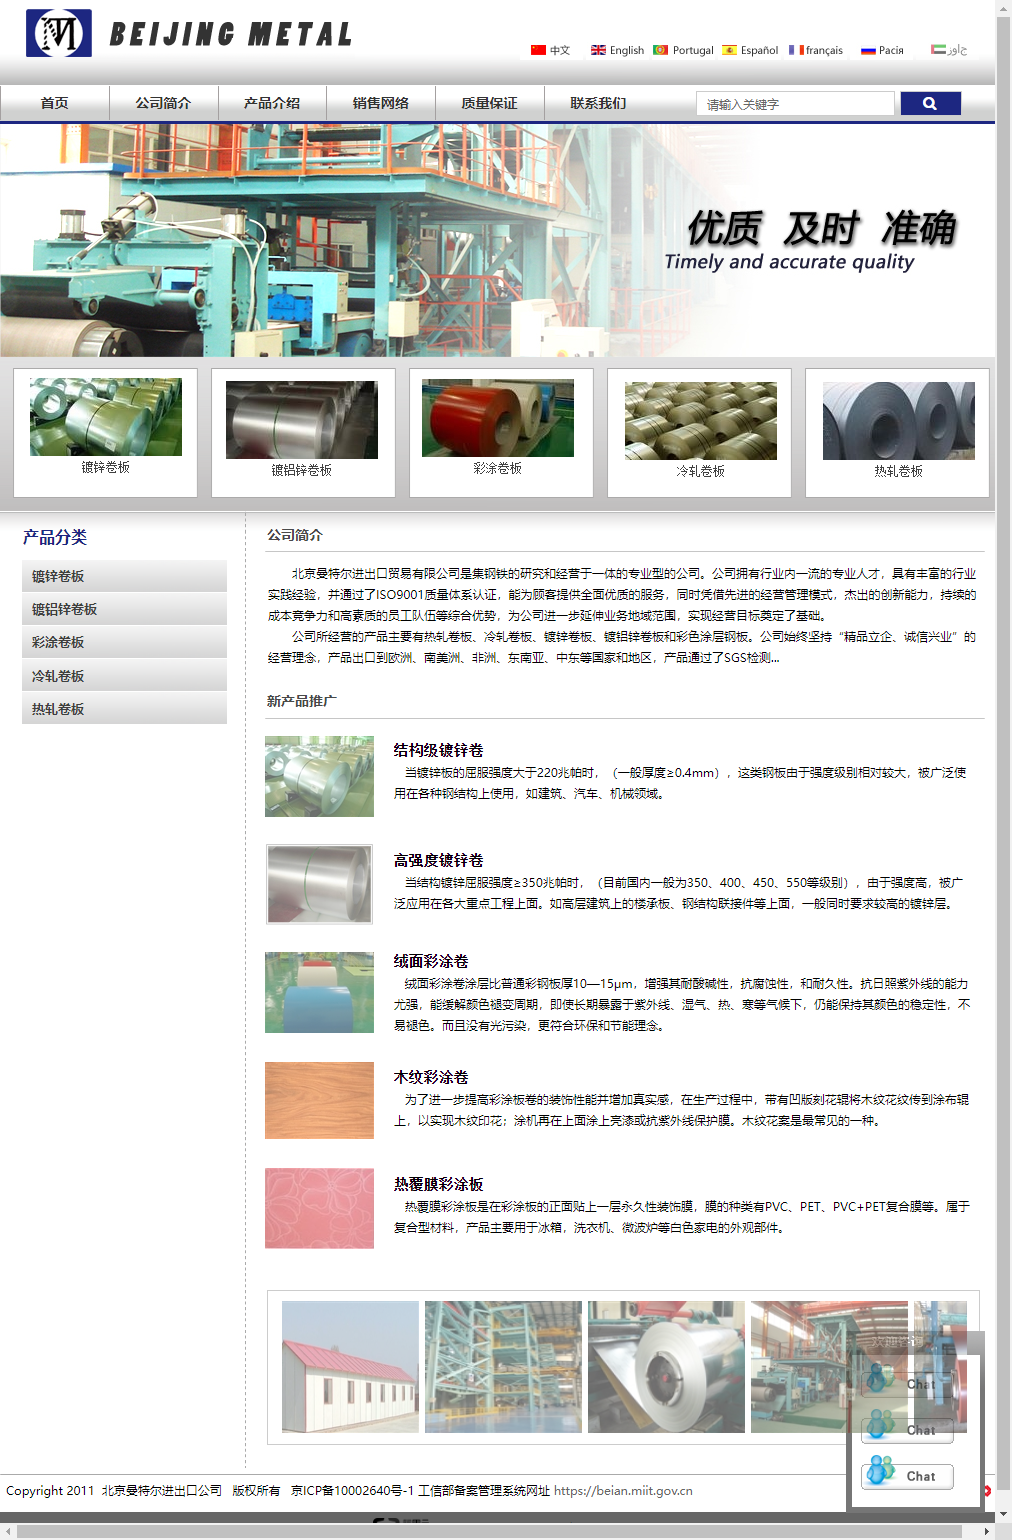 北京曼特尔进出口贸易有限公司网站案例